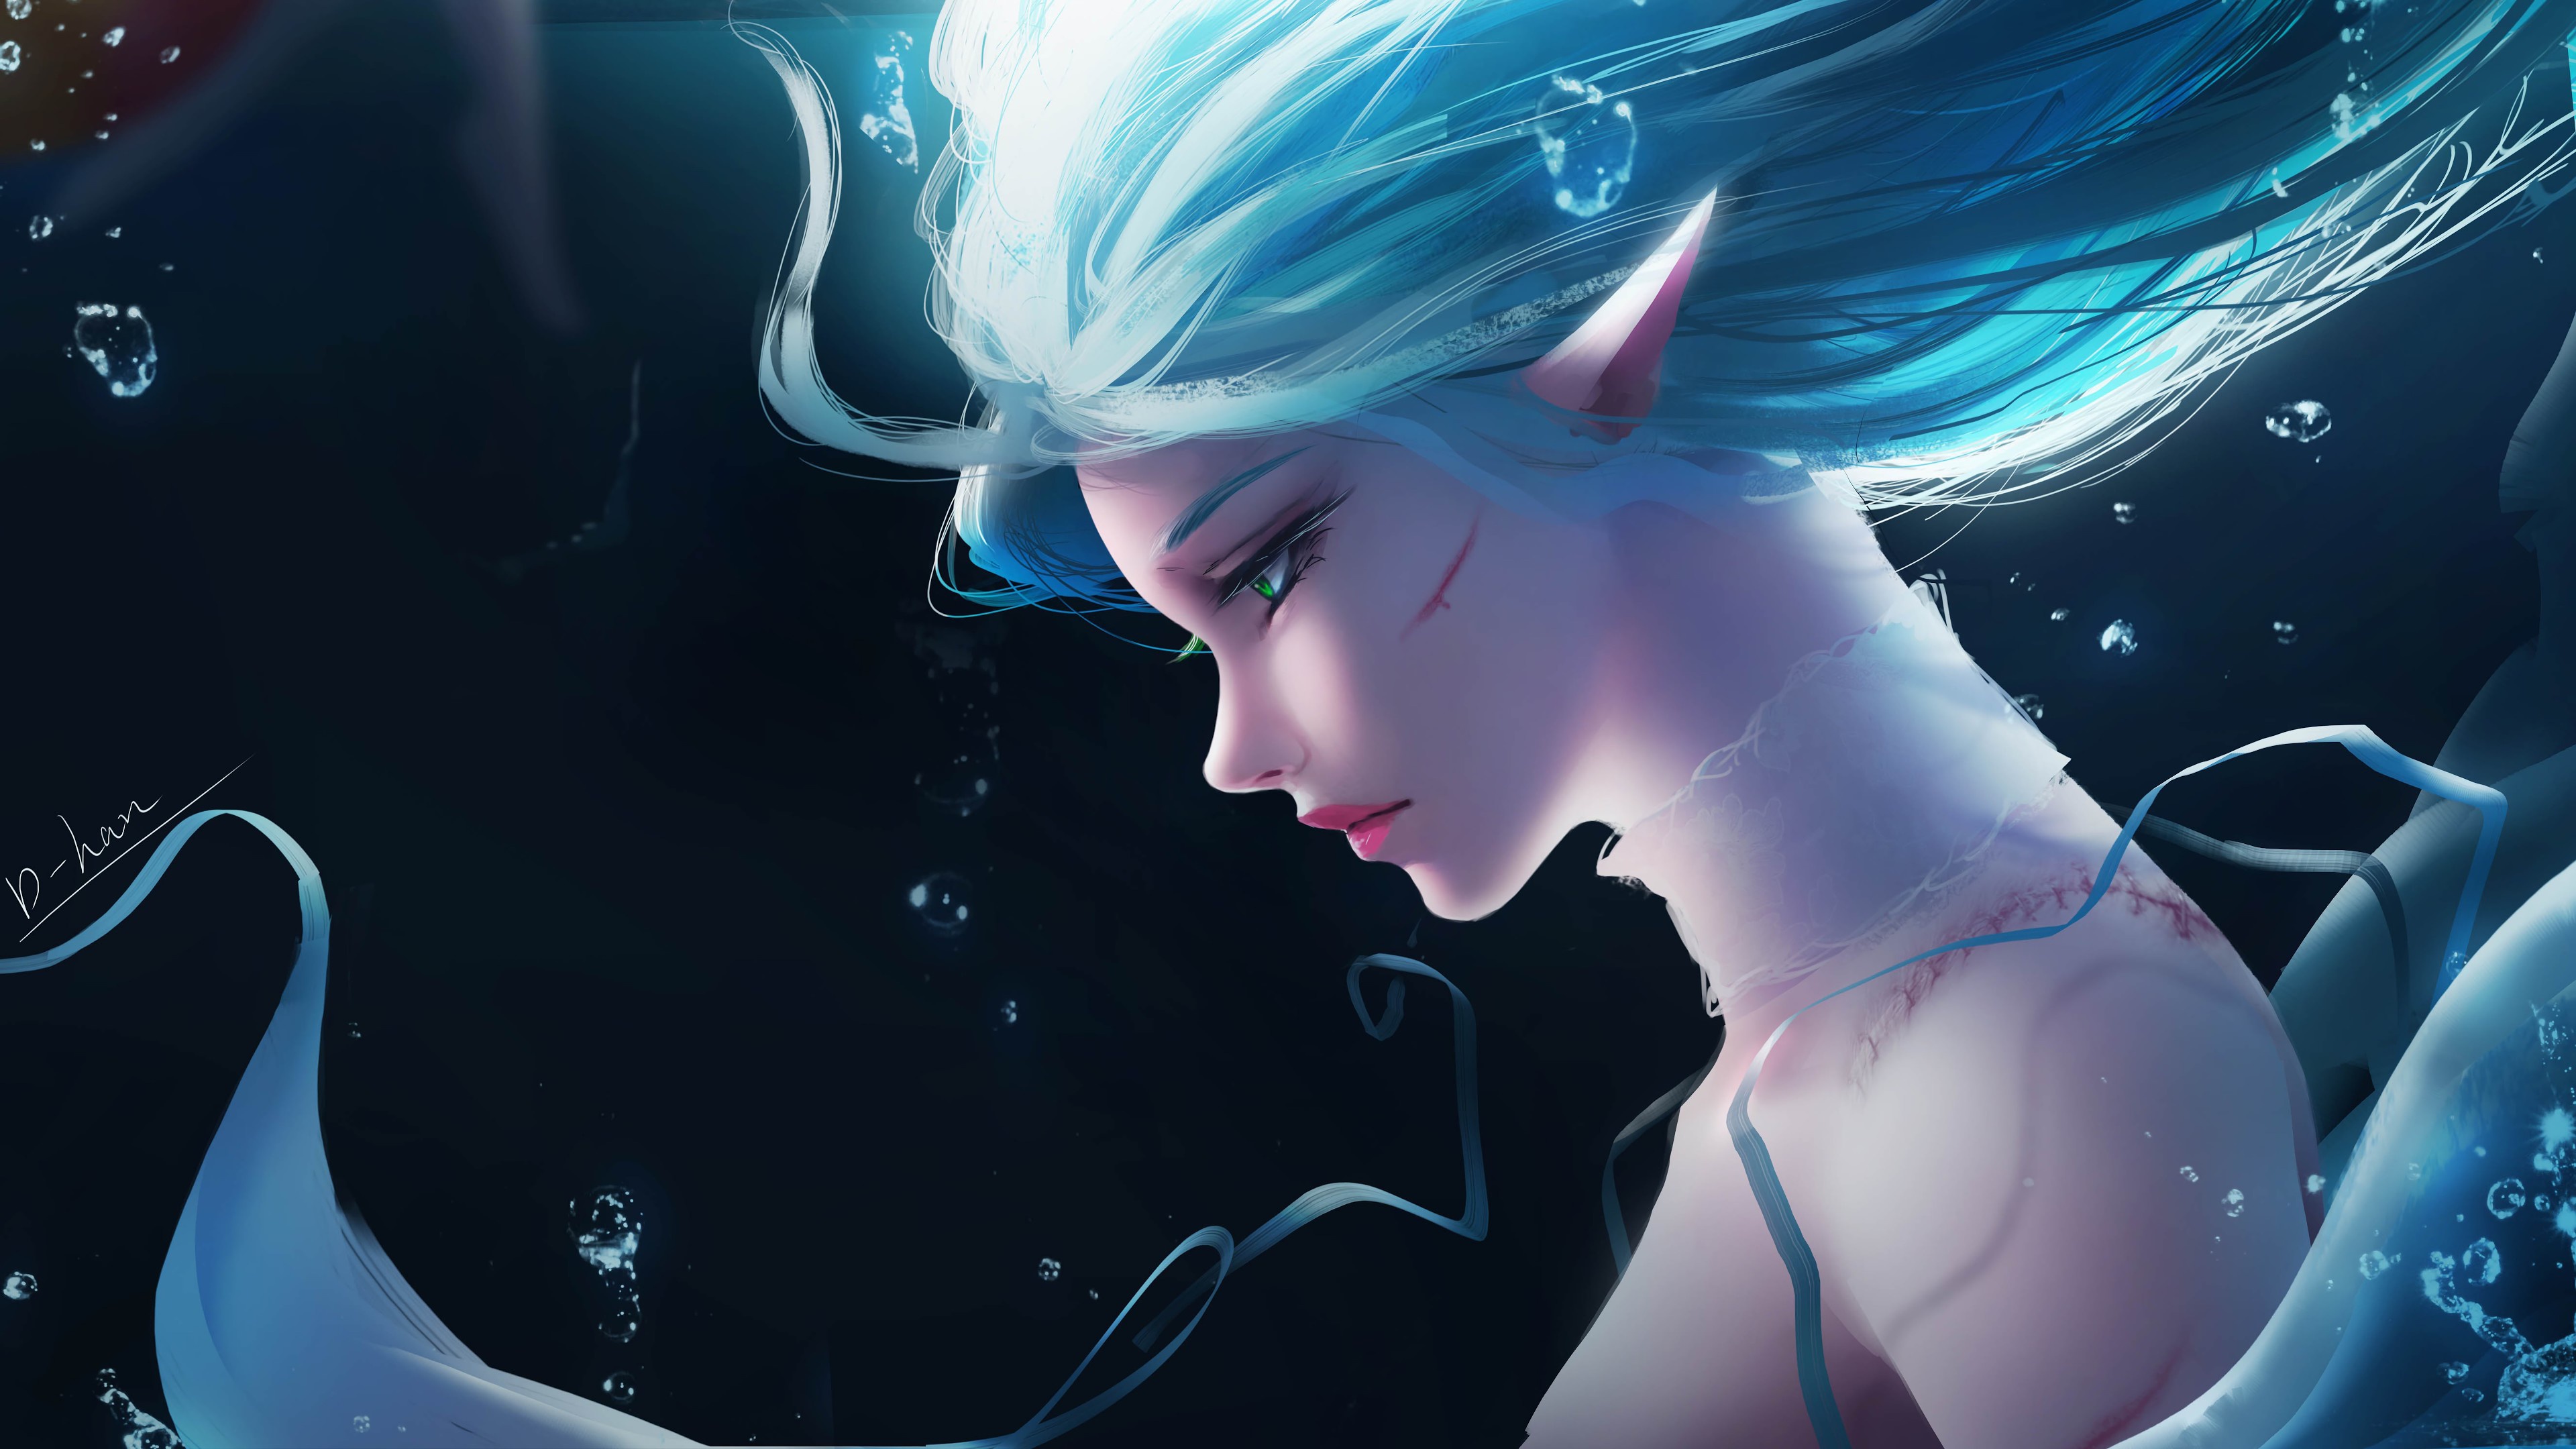 Elves Women Green Eyes Pointy Ears Underwater Blue Hair Fantasy Girl Fantasy Art Artwork Digital Art 3840x2160